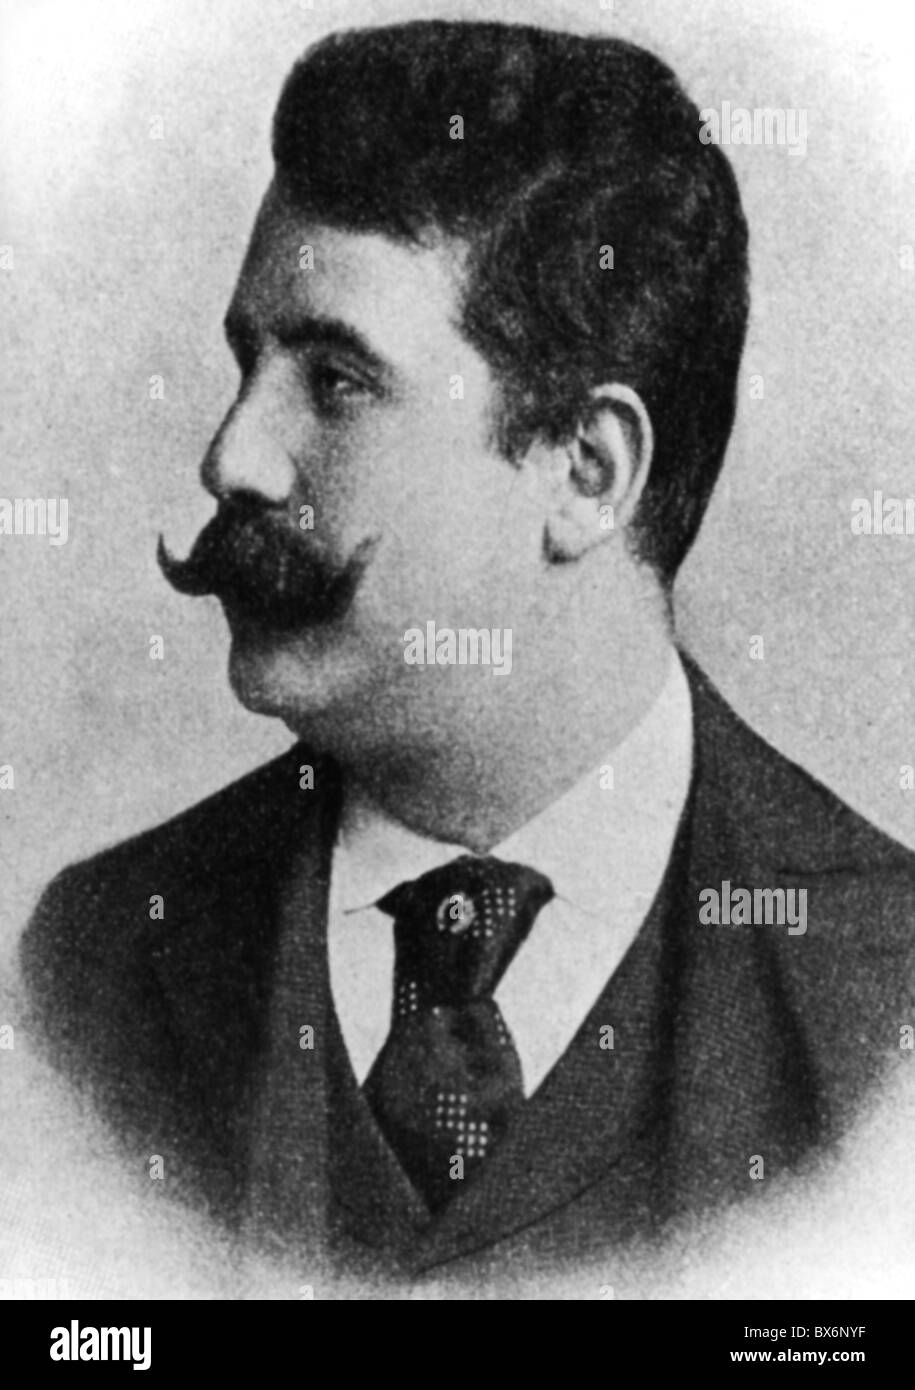 Leoncavallo, Ruggero, 23.4.1857 - 9.8.1919, Italian composer, portrait, photo, 19th century, Stock Photo